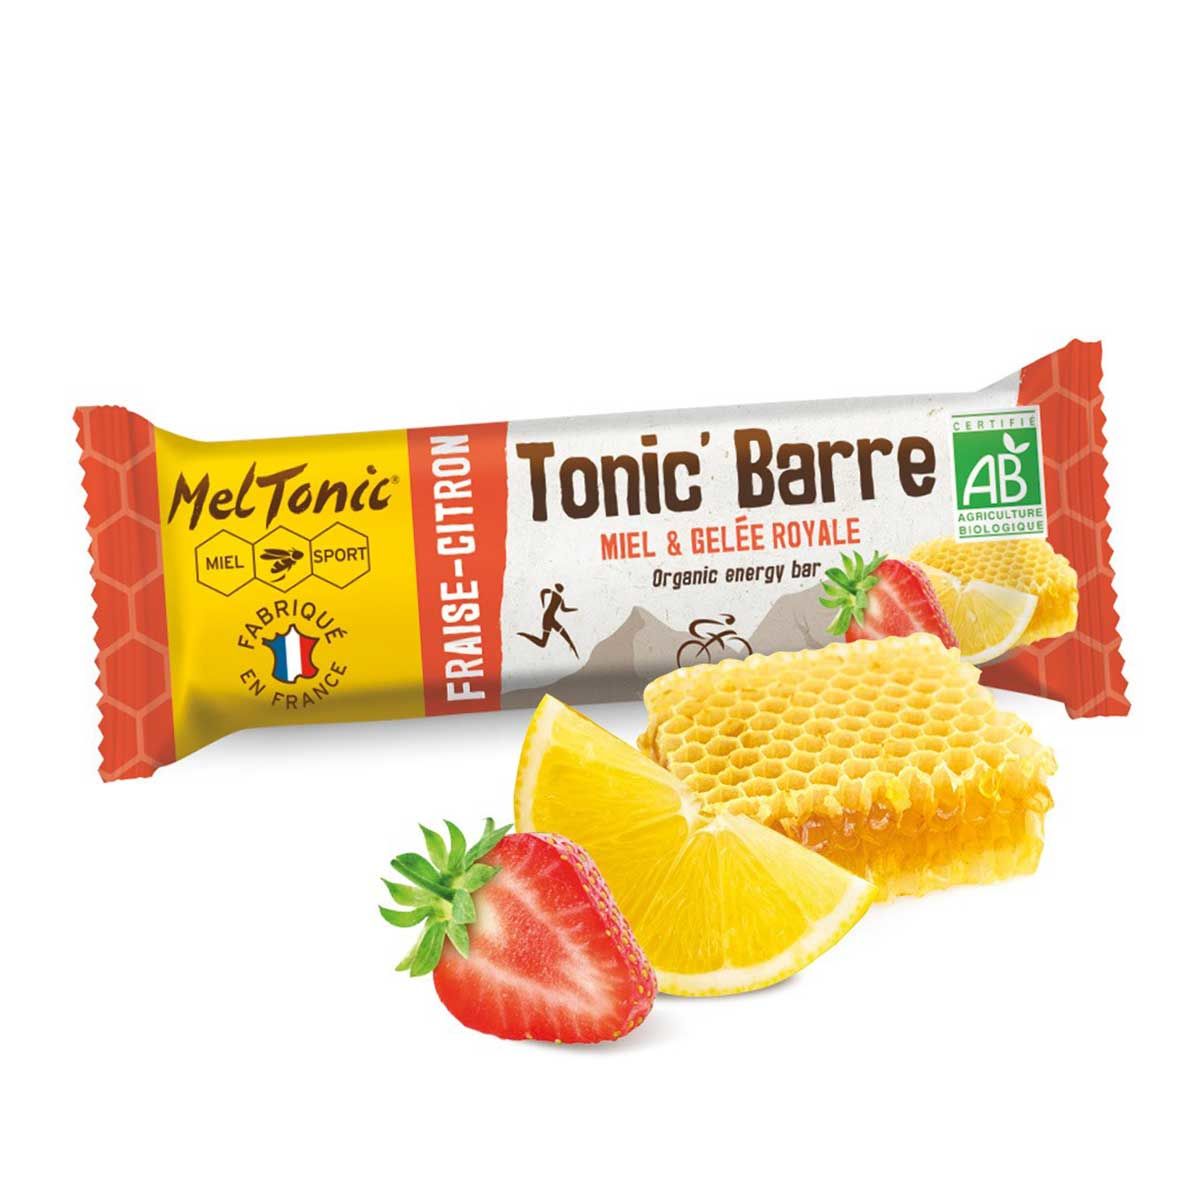 Meltonic organic energy bar - Honey, strawberry and lemon